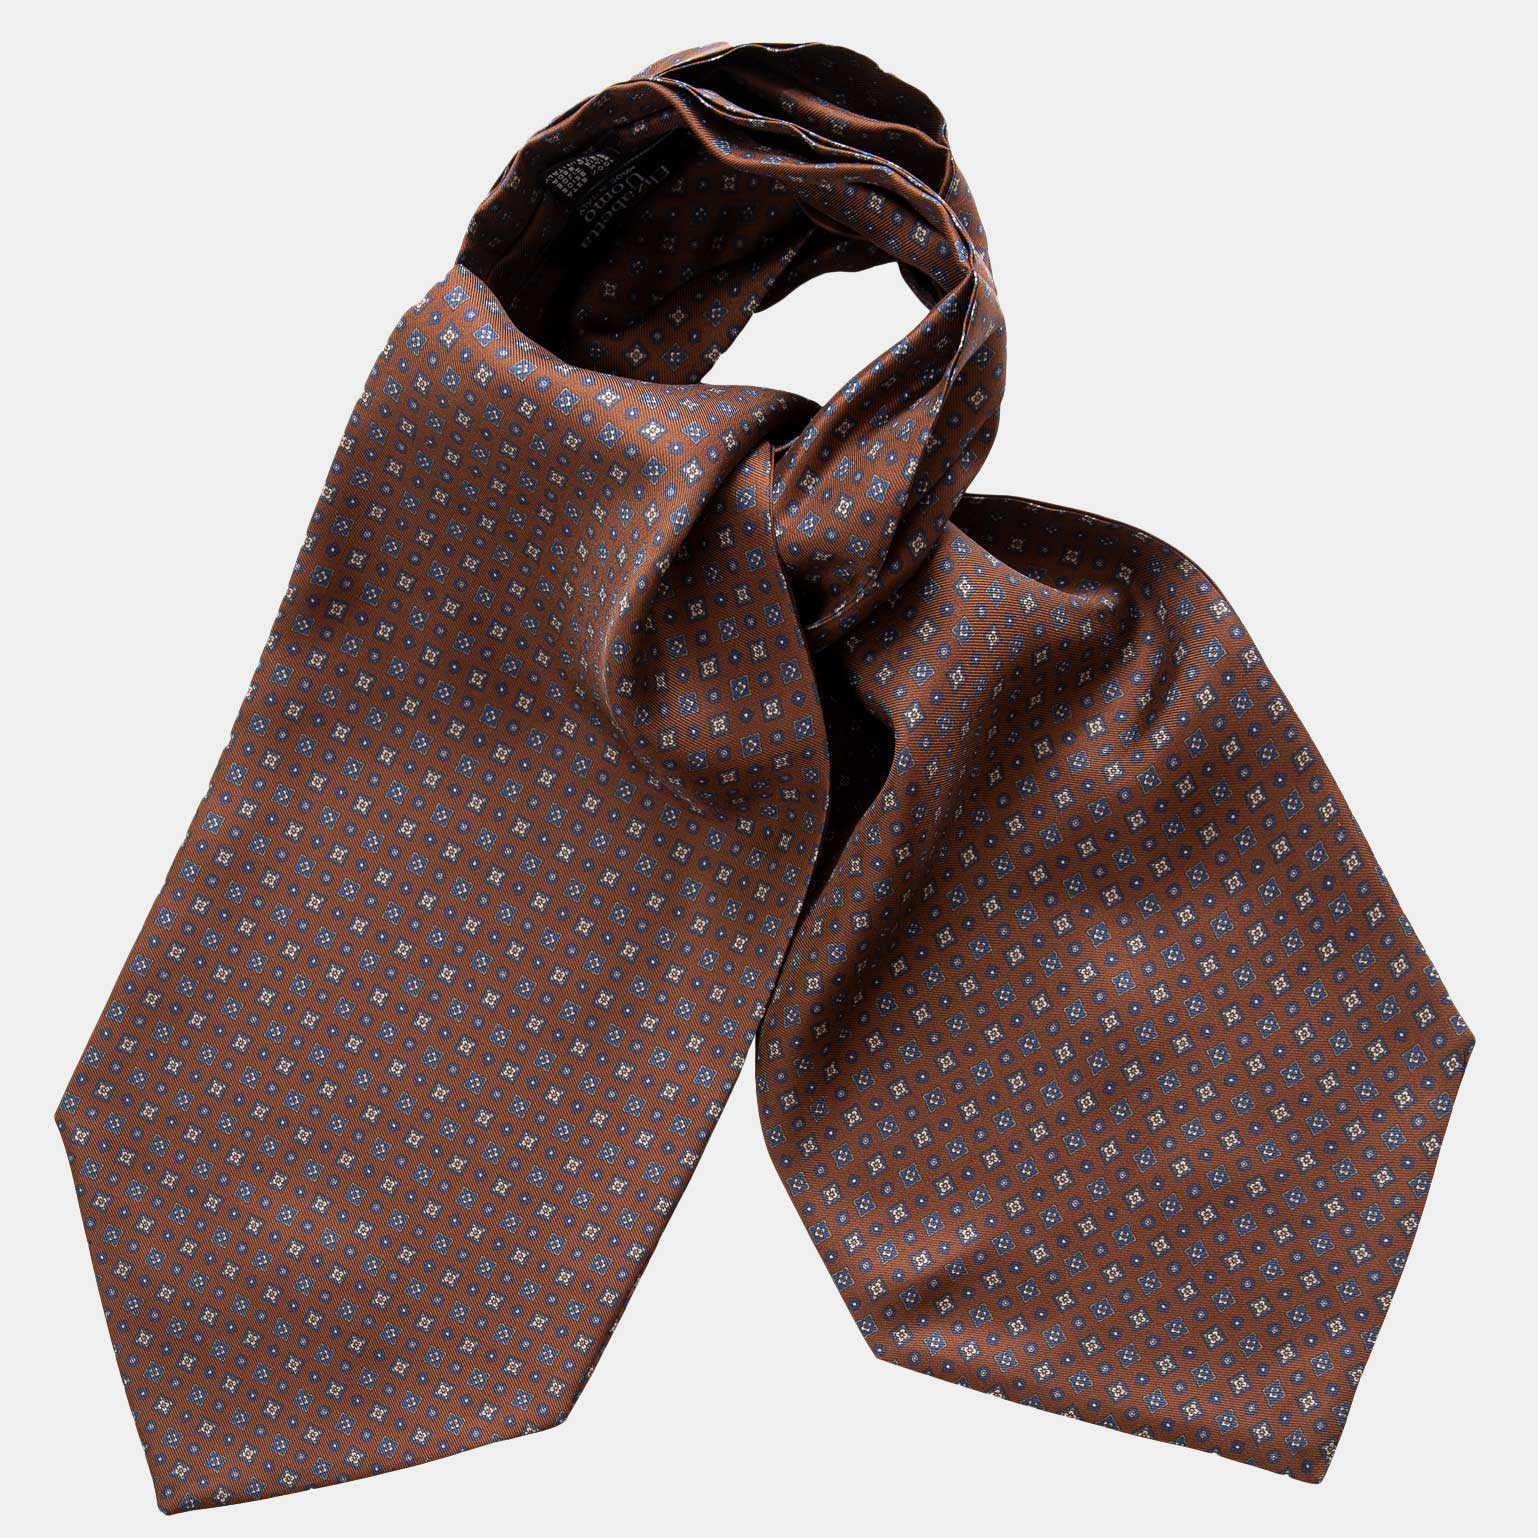 Brown Ascot Cravat Necktie - 100% Made in Italy